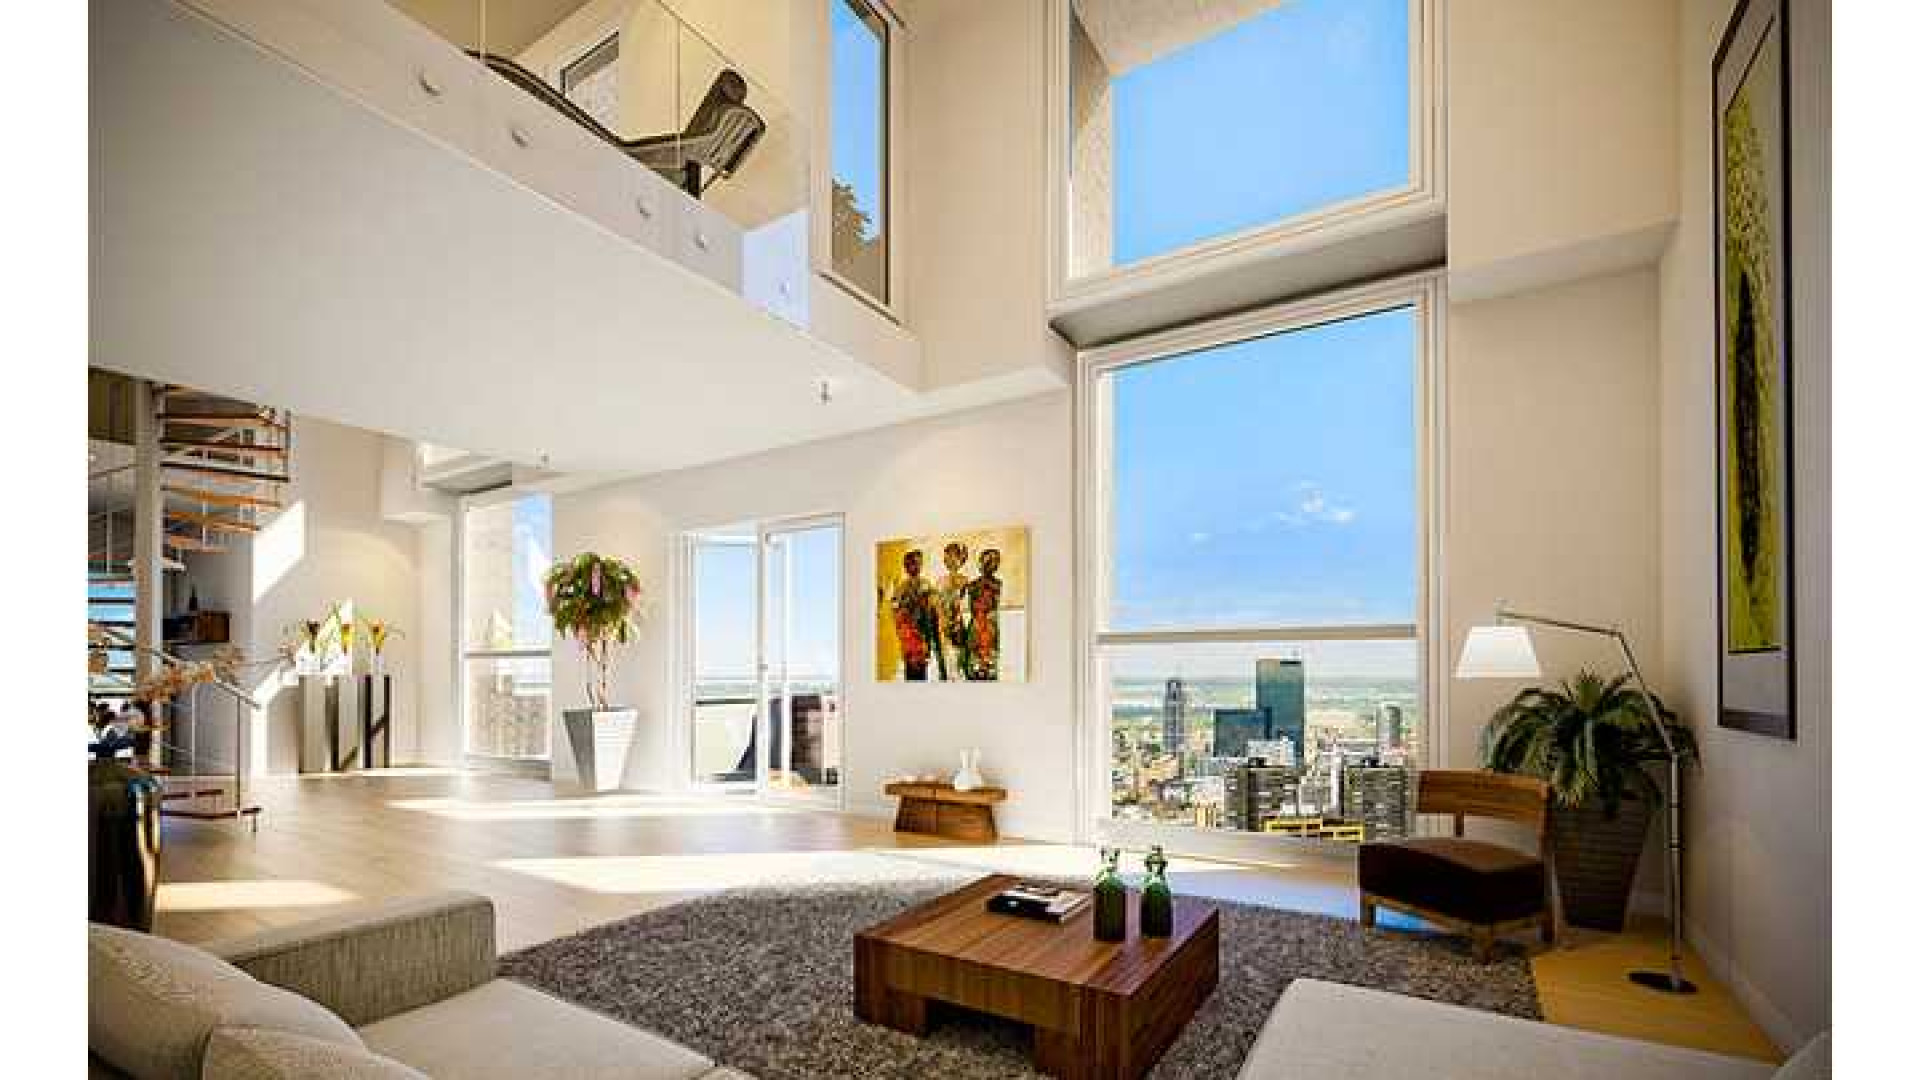 Dit is het enorm luxe appartement van Memphis Depay. Zie foto's 2